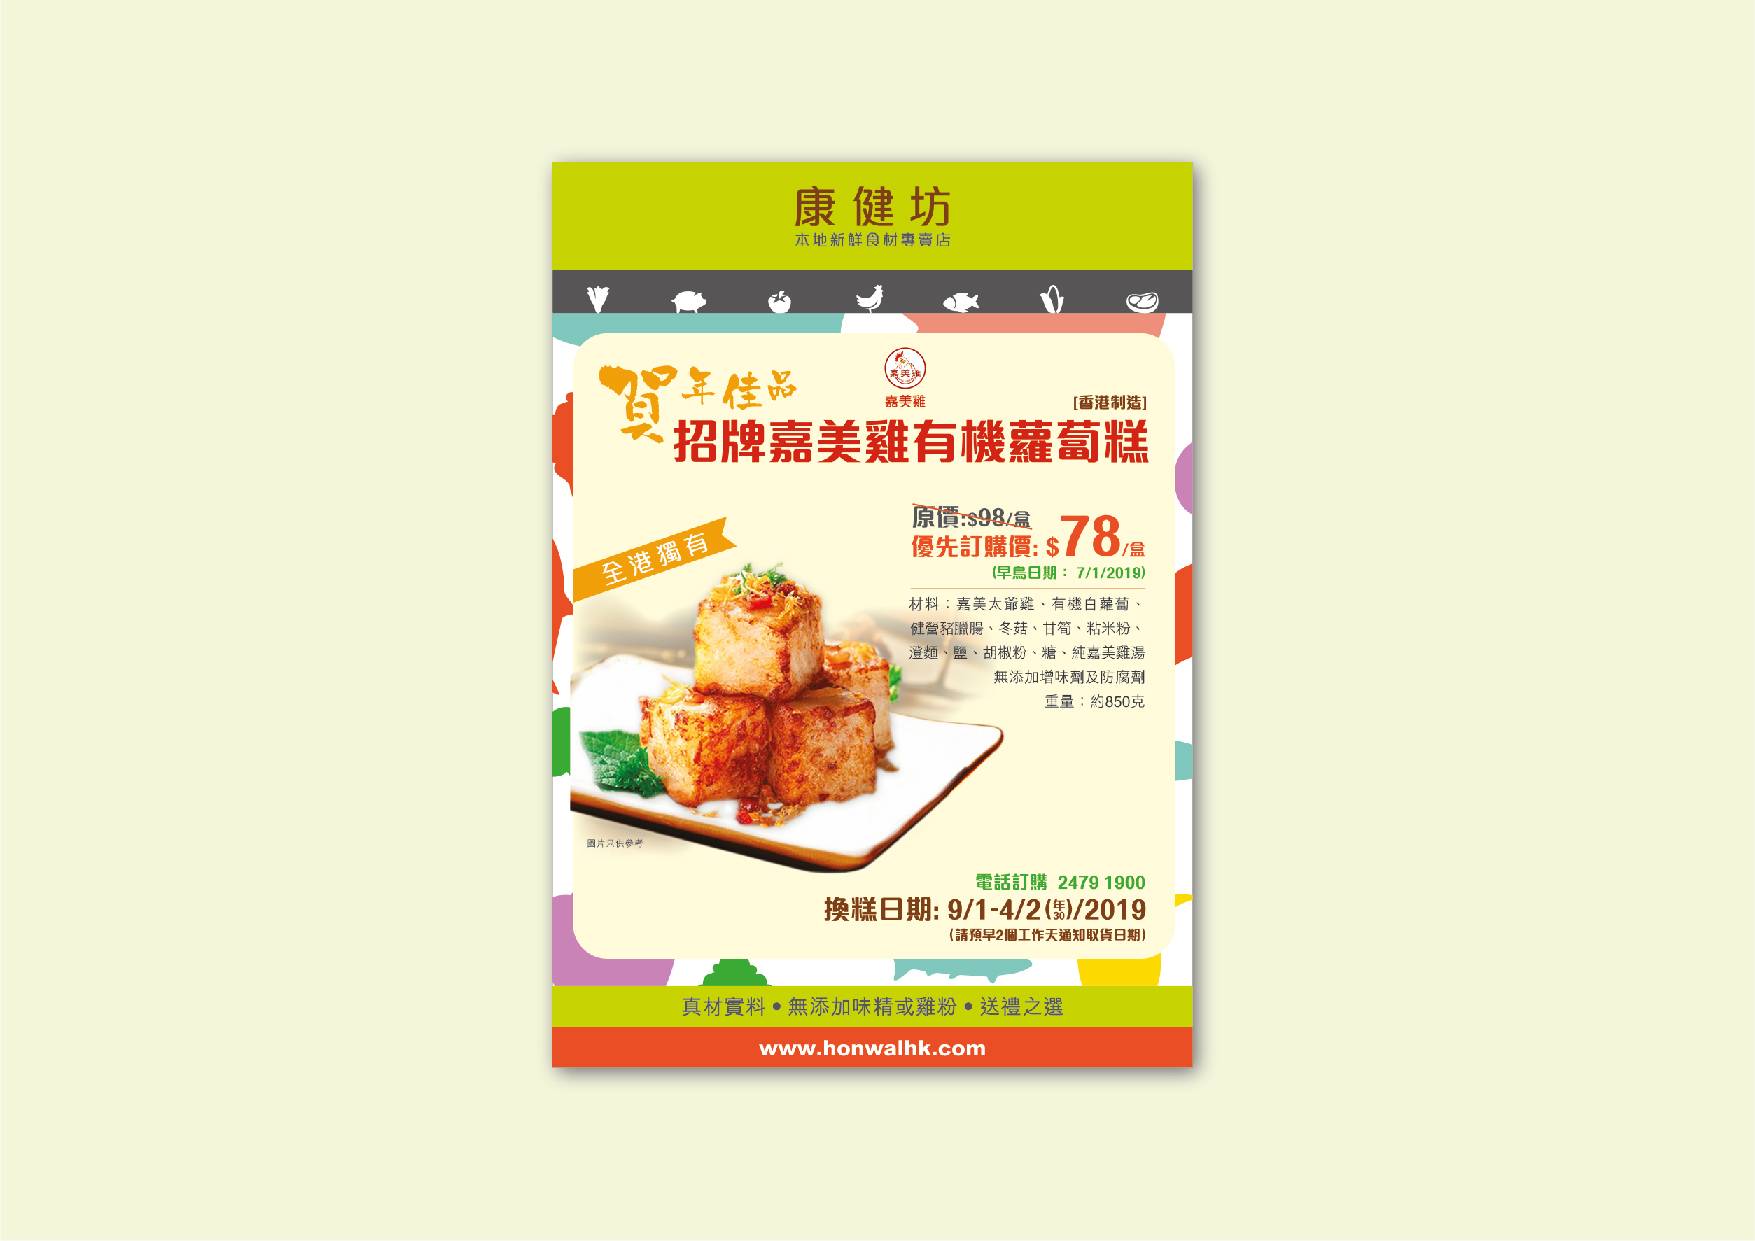 Ka Mei Chicken rebranding for turnip cake poster